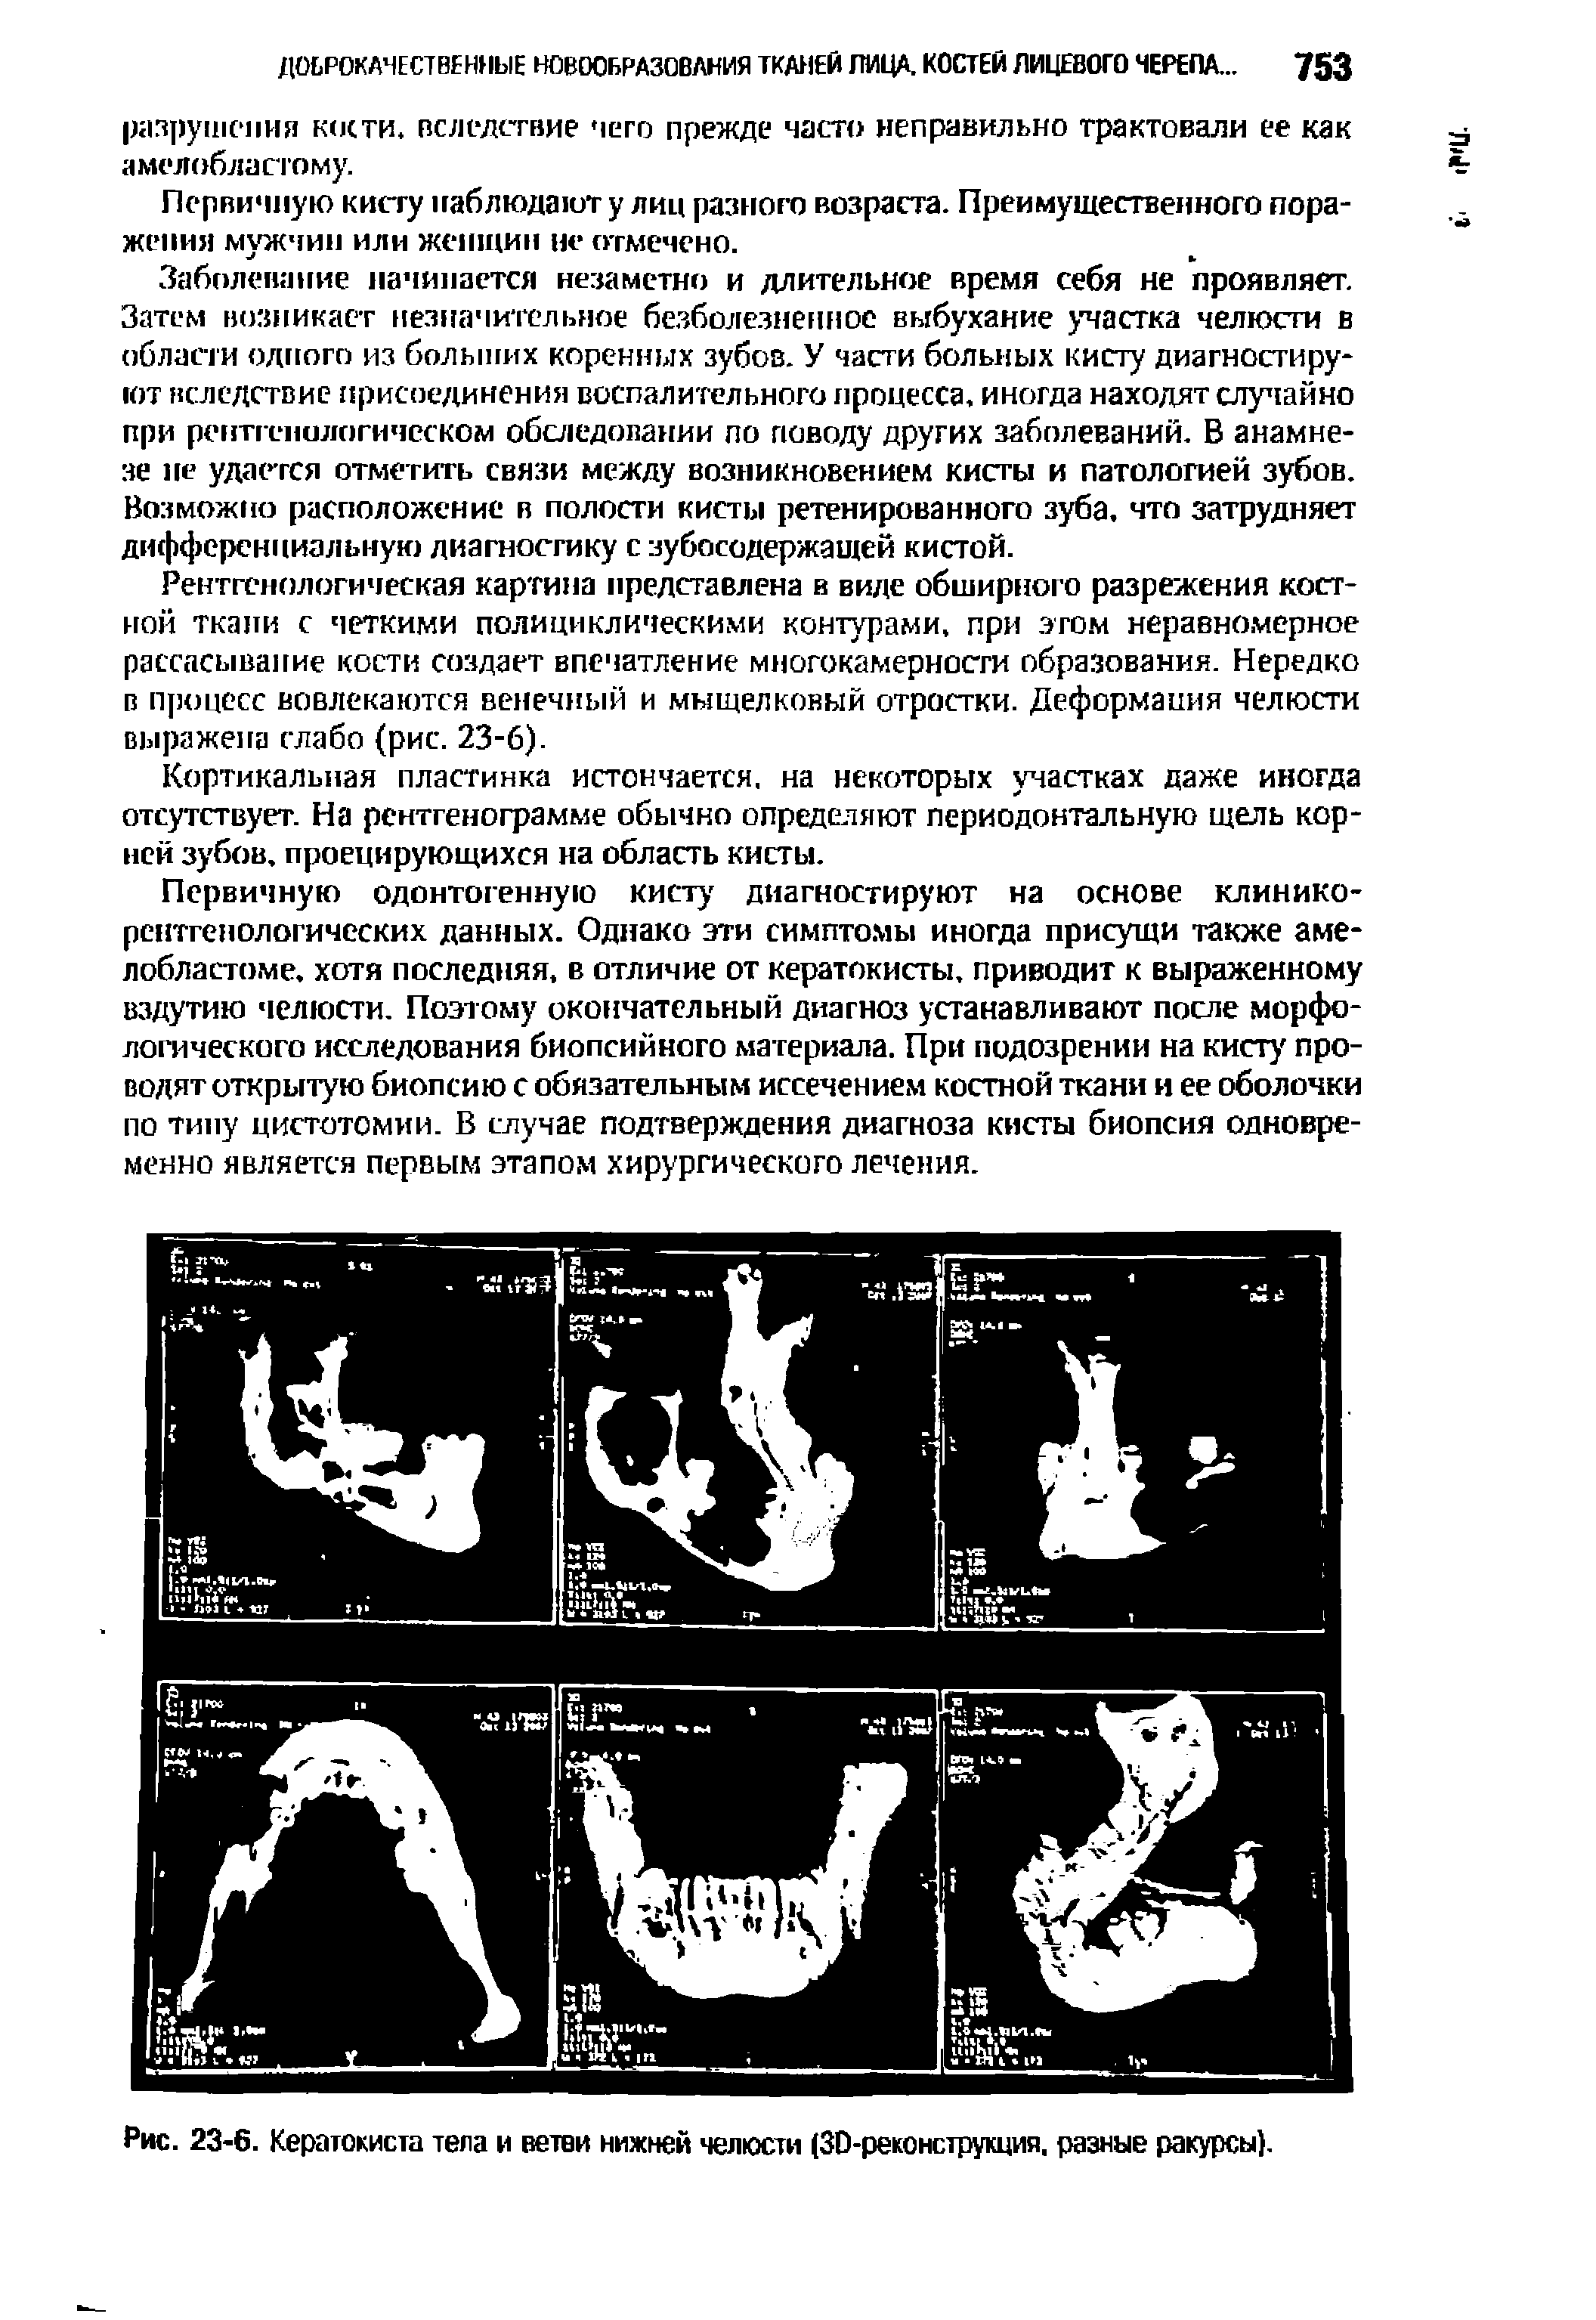 Рис. 23-6. Кератокиста тела и ветви нижней челюсти (30-реконструкция, разные ракурсы).